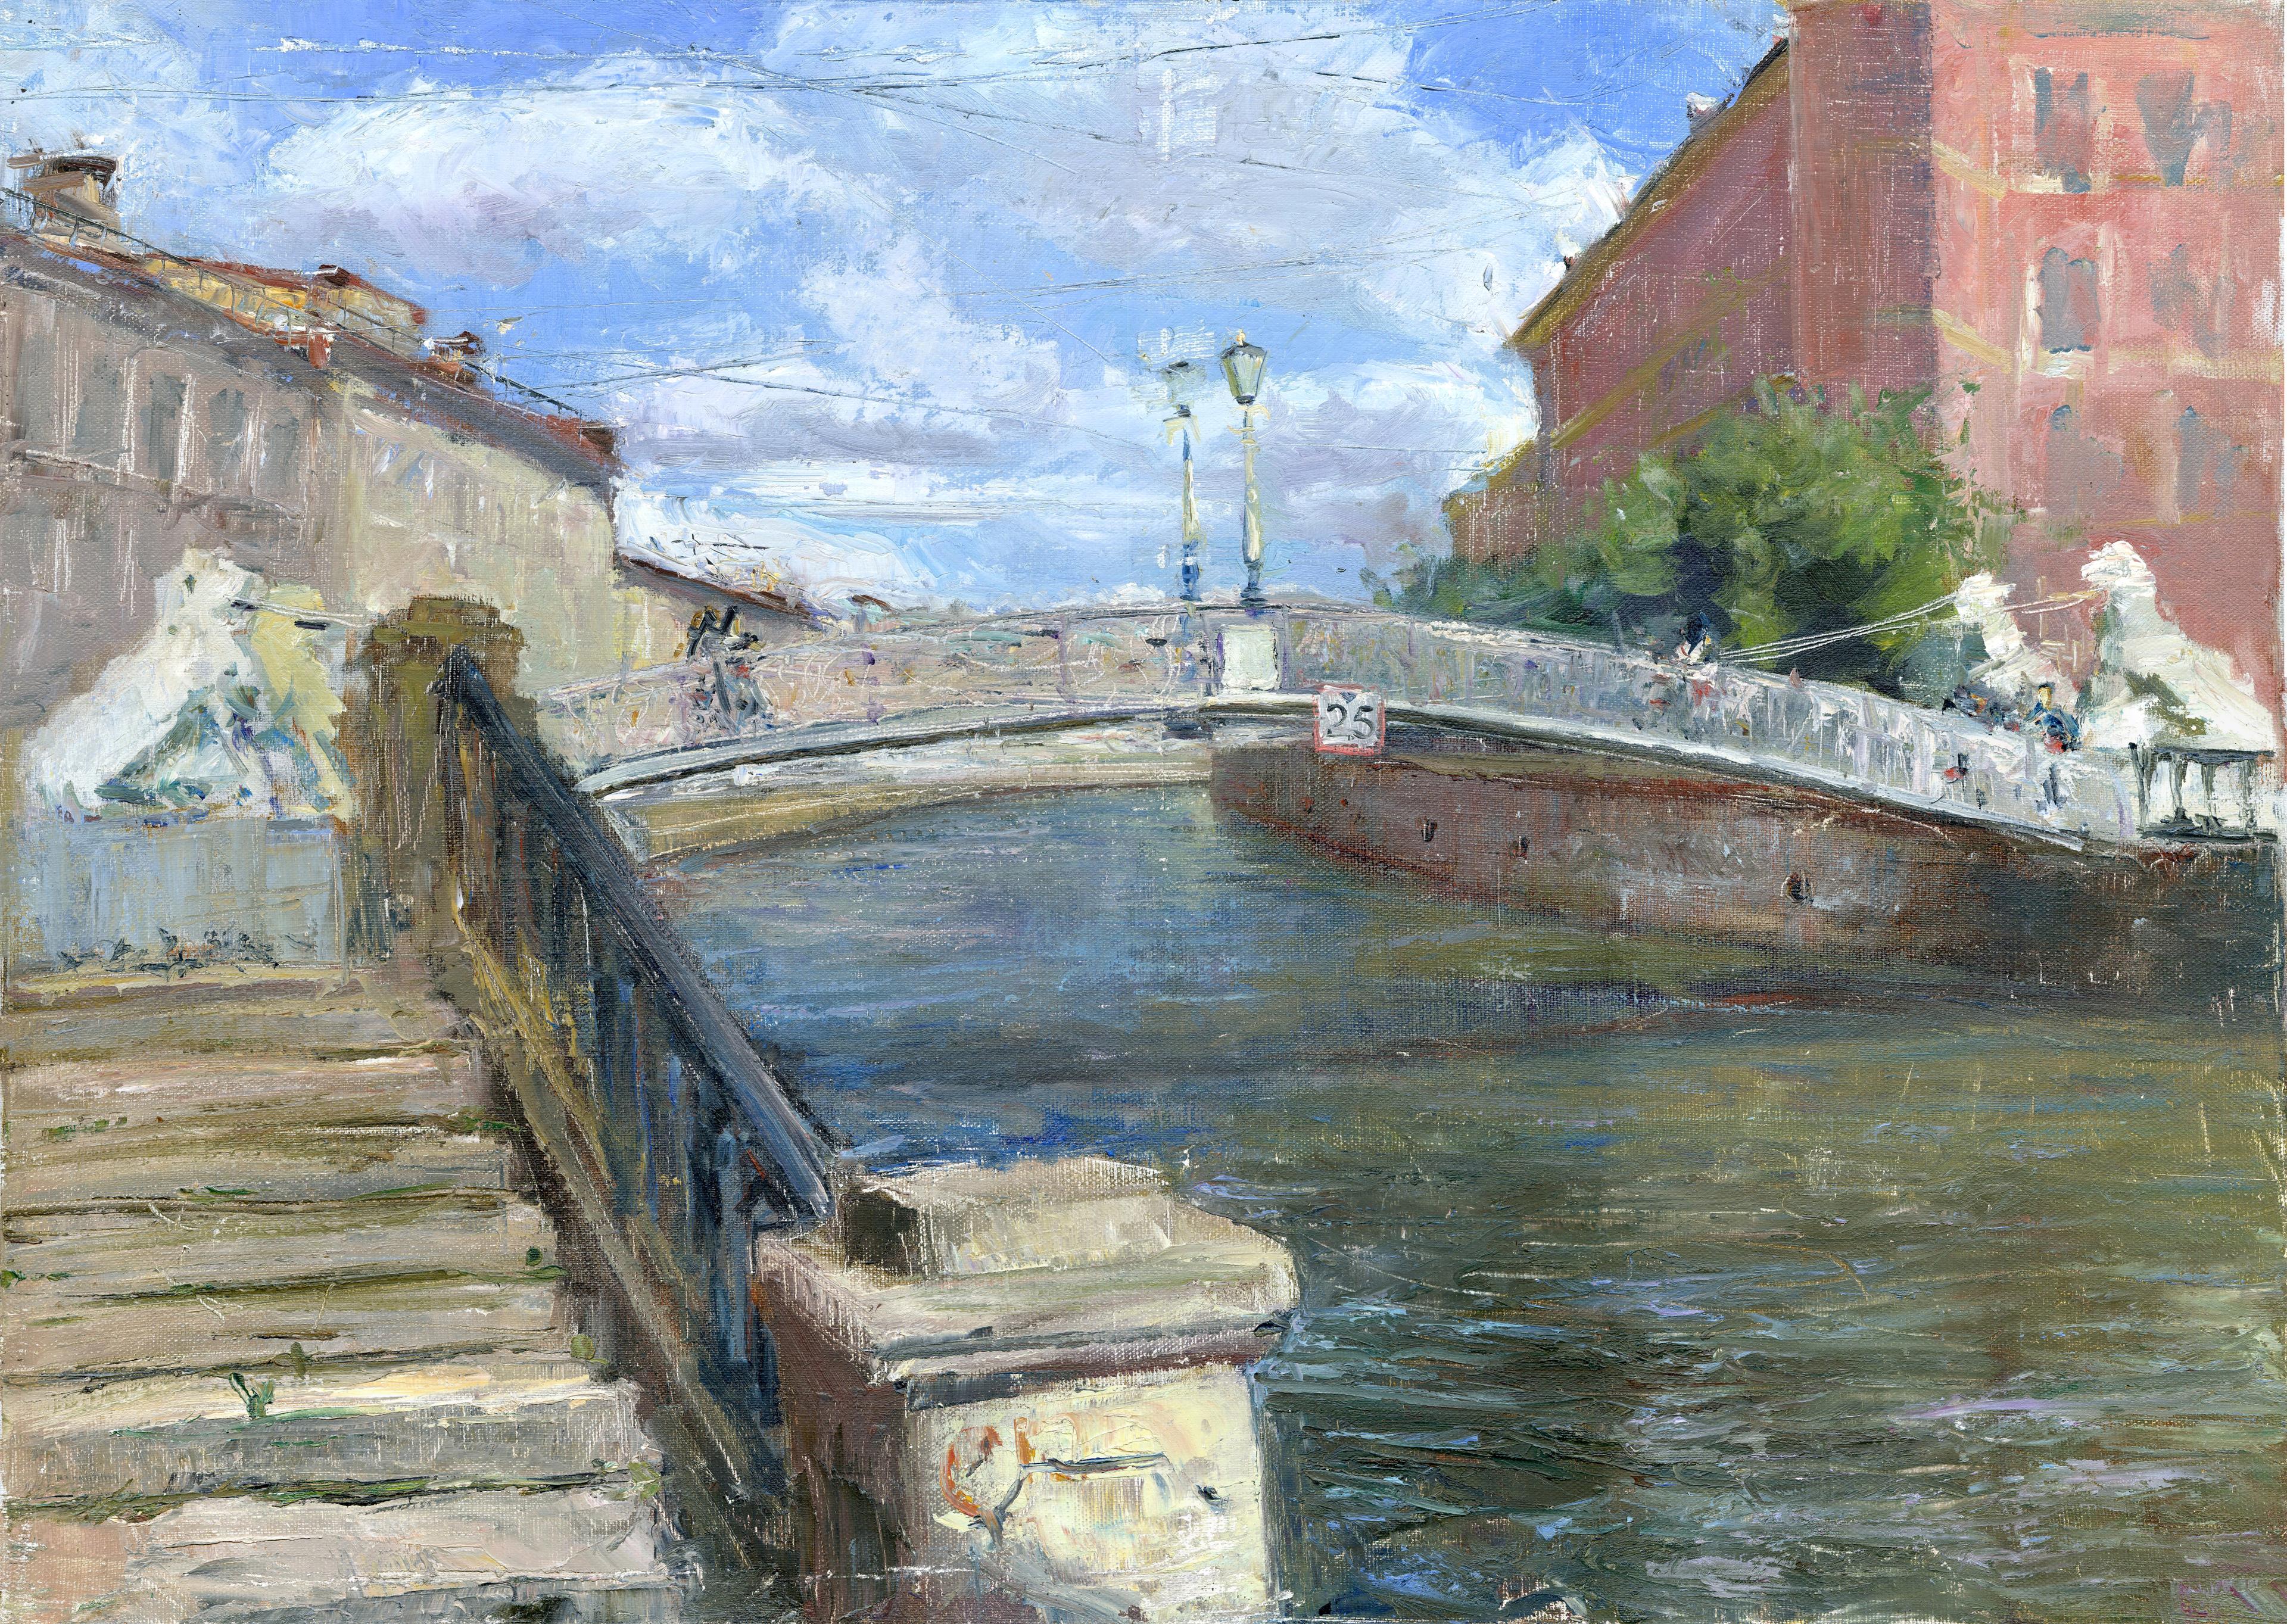 Львиный мост. Original modern art painting